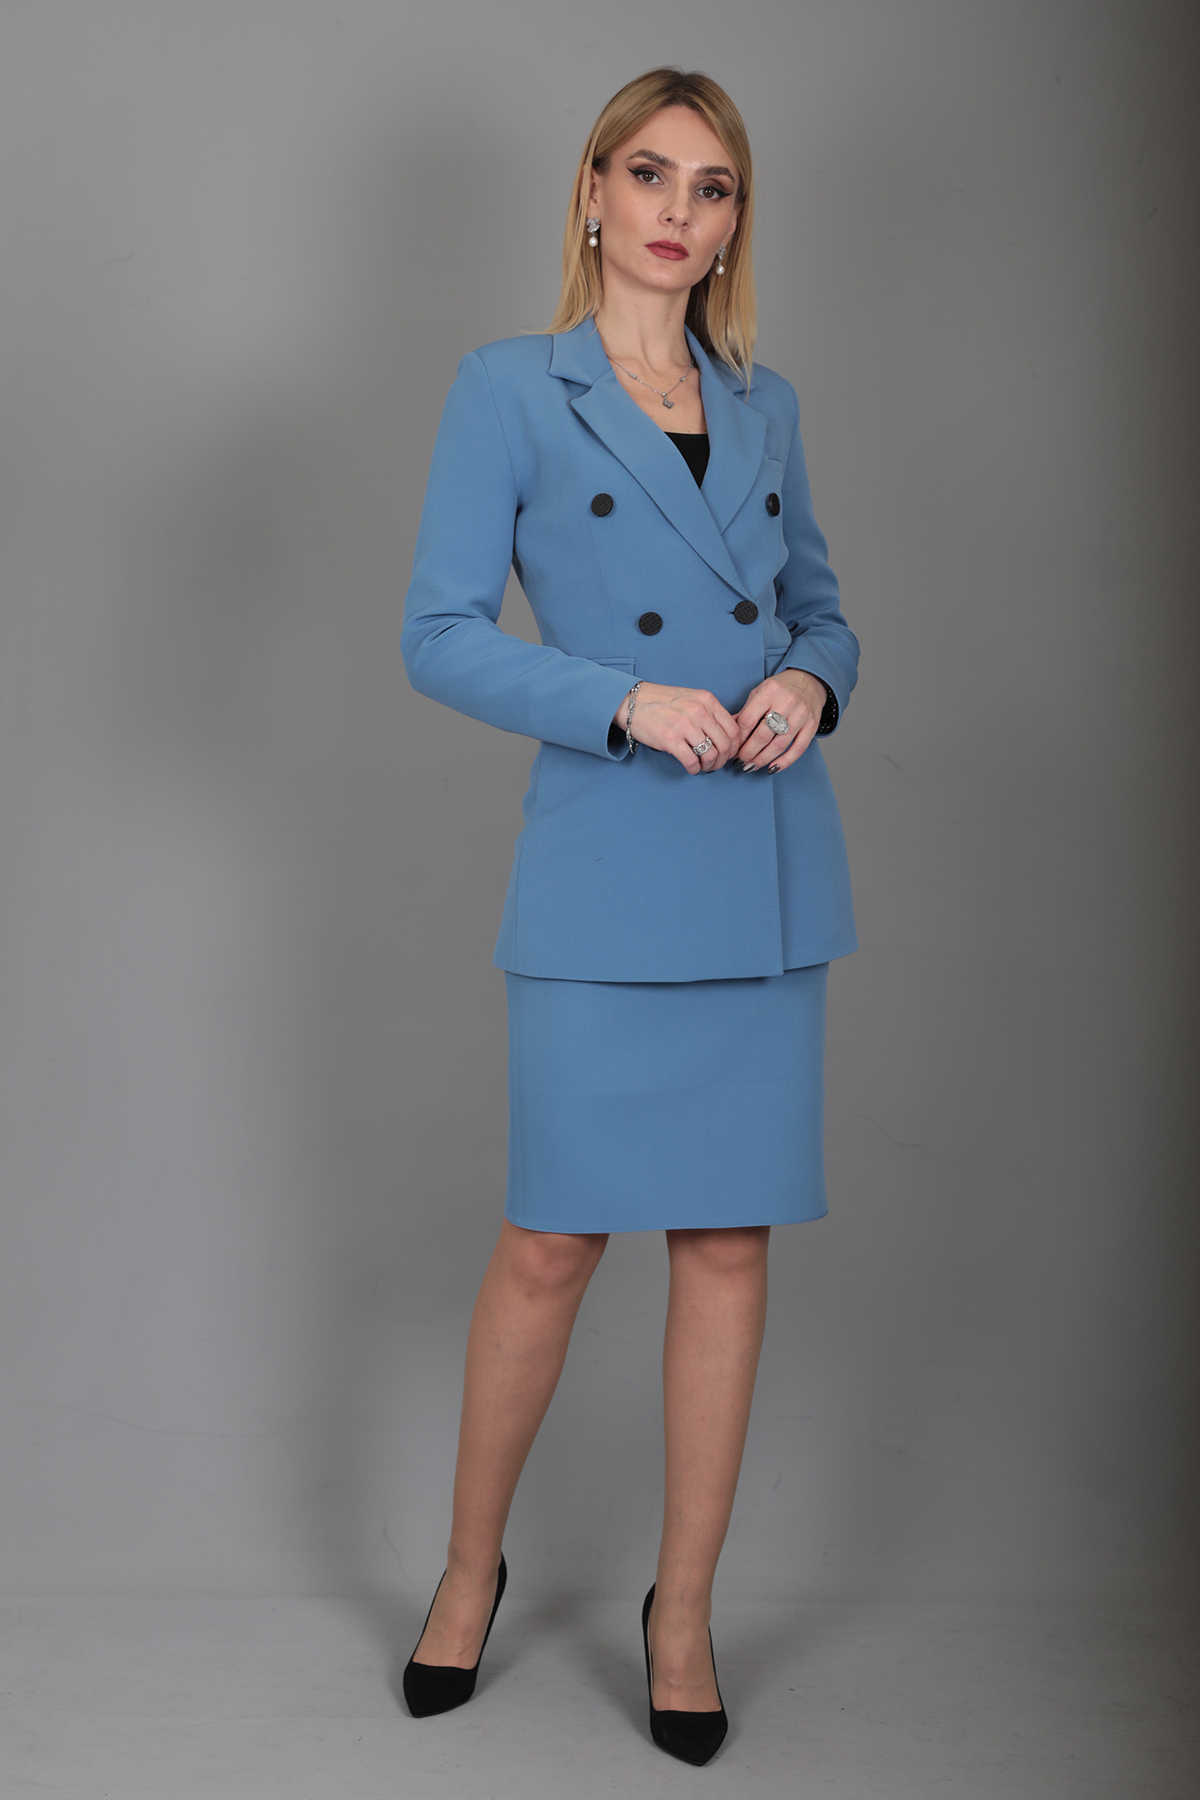 Blazer Ceket & Kalem Etek Takım-Açık Mavi - Önder Özsoy | Ofis Giyim | Yeni  Sezon